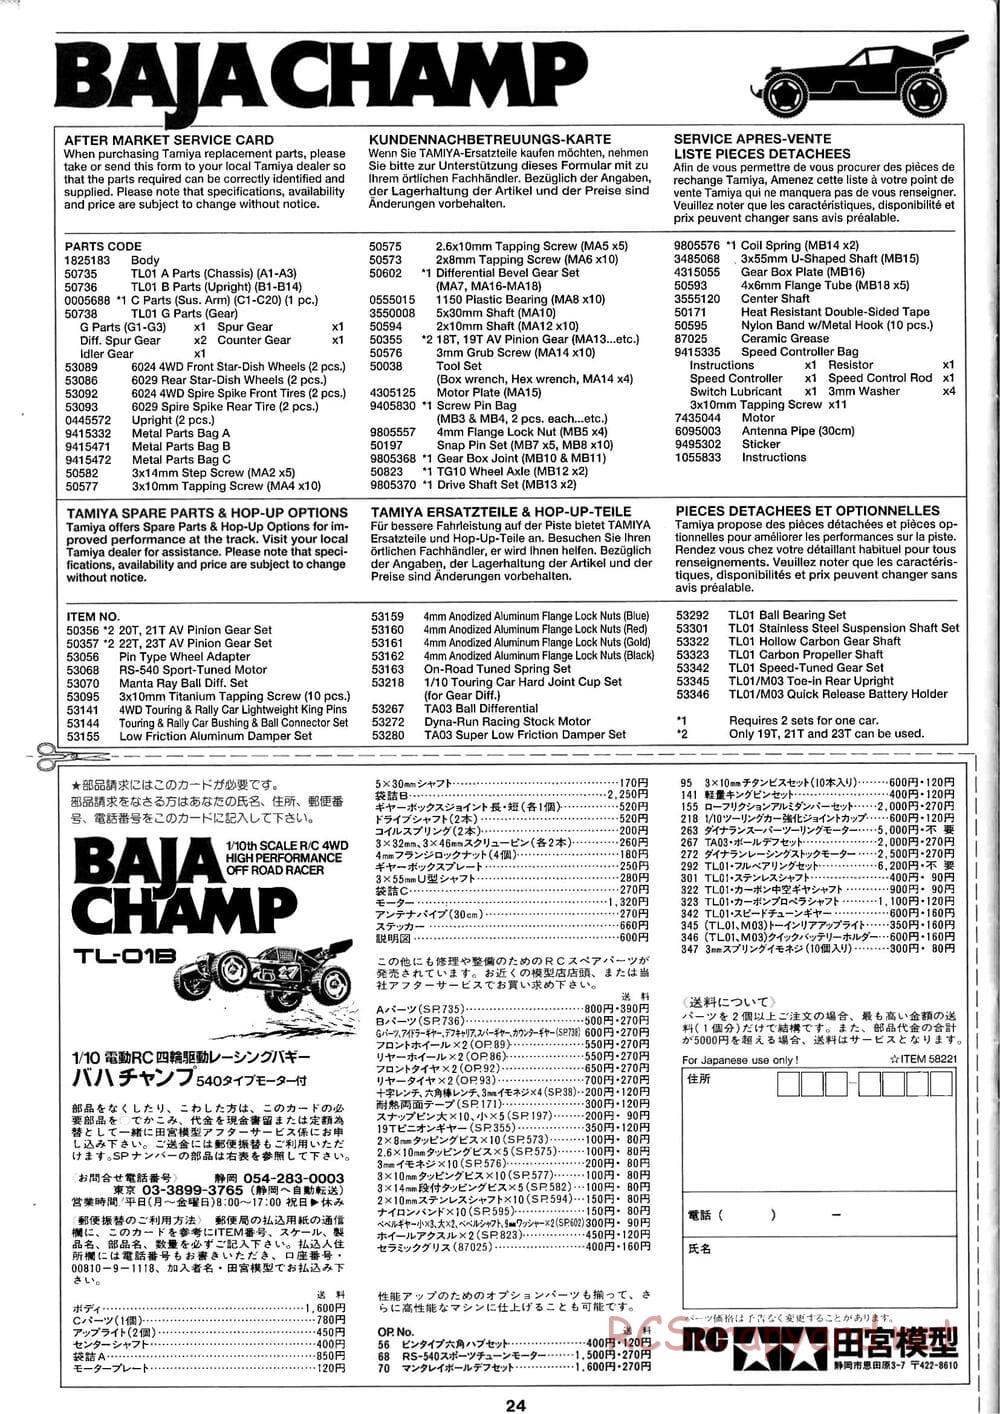 Tamiya - Baja Champ - TL-01B Chassis - Manual - Page 24